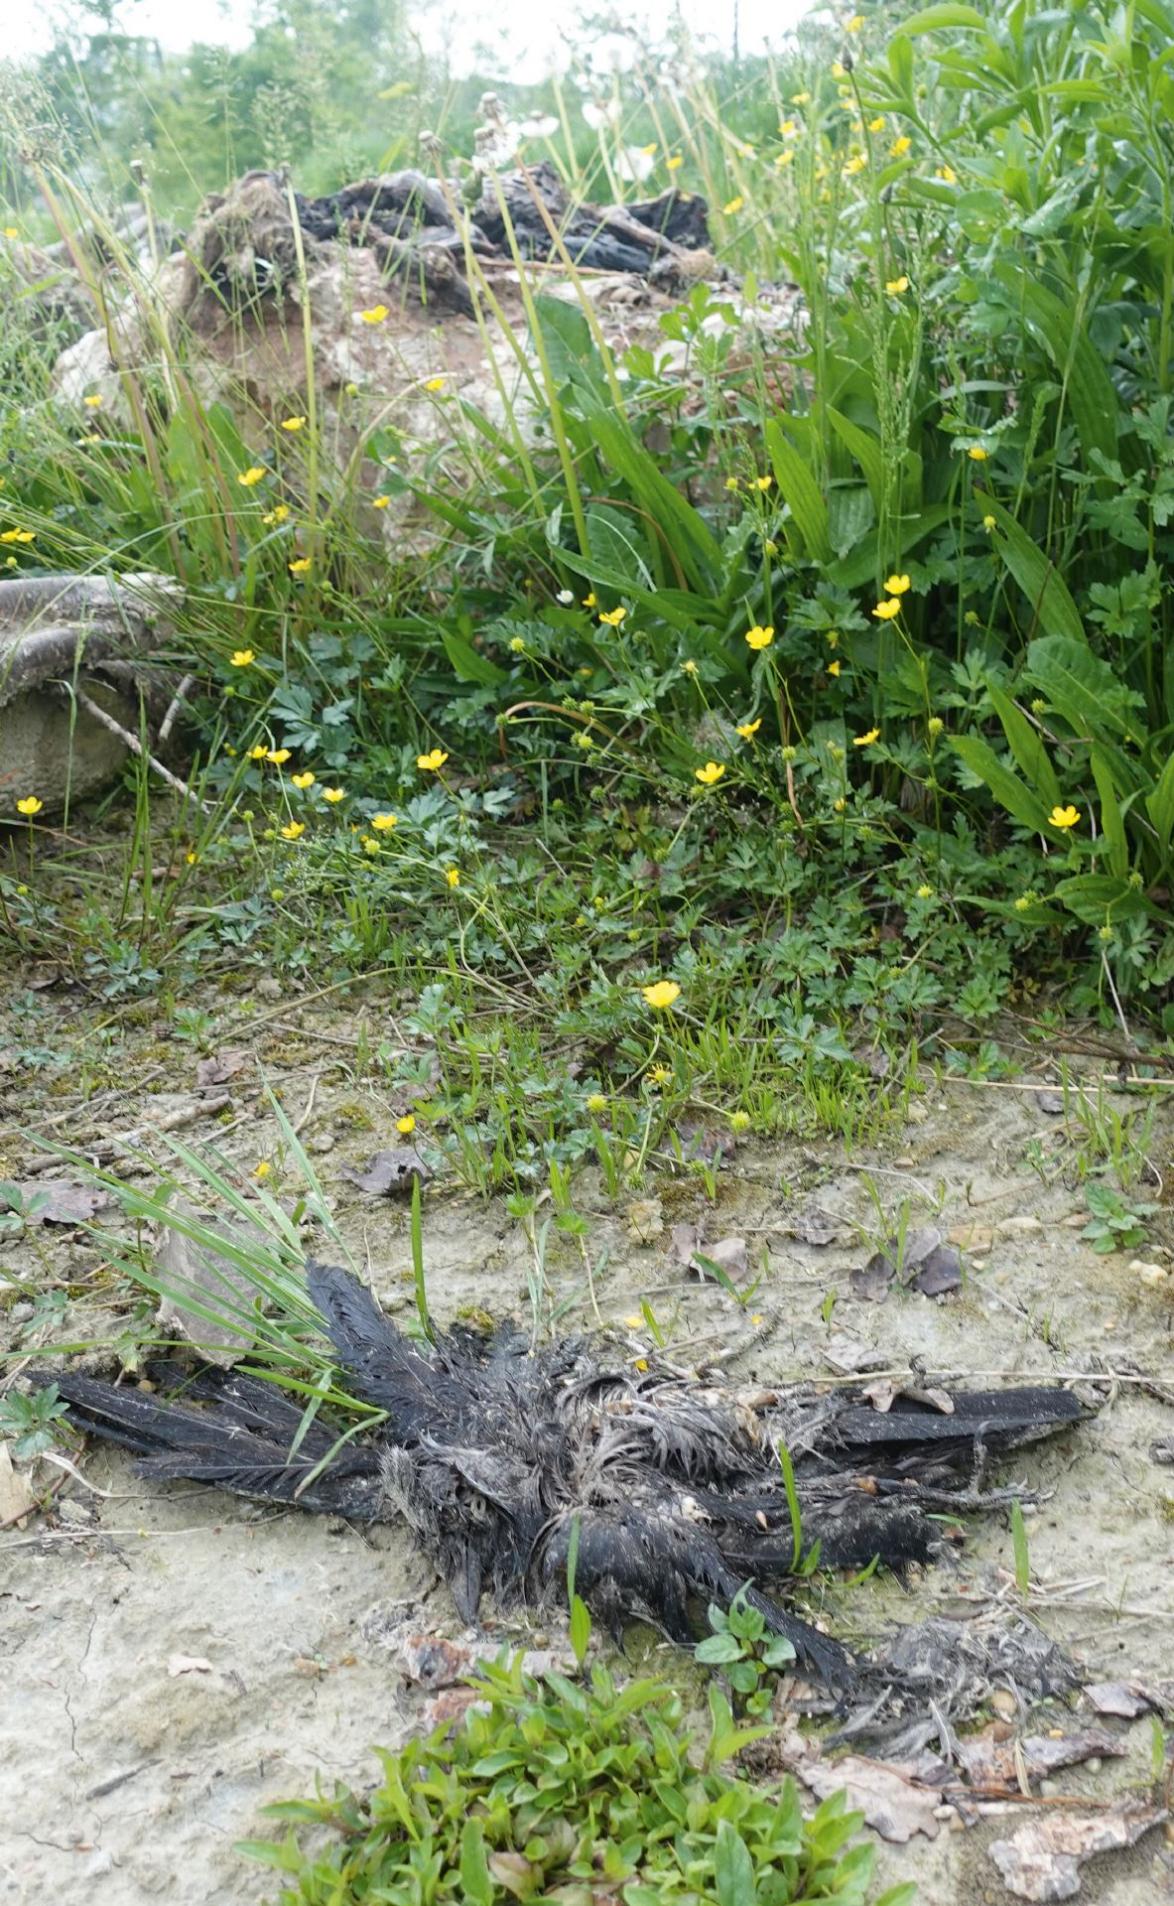  Rund um den Stein sind tote Vögel angeordnet.